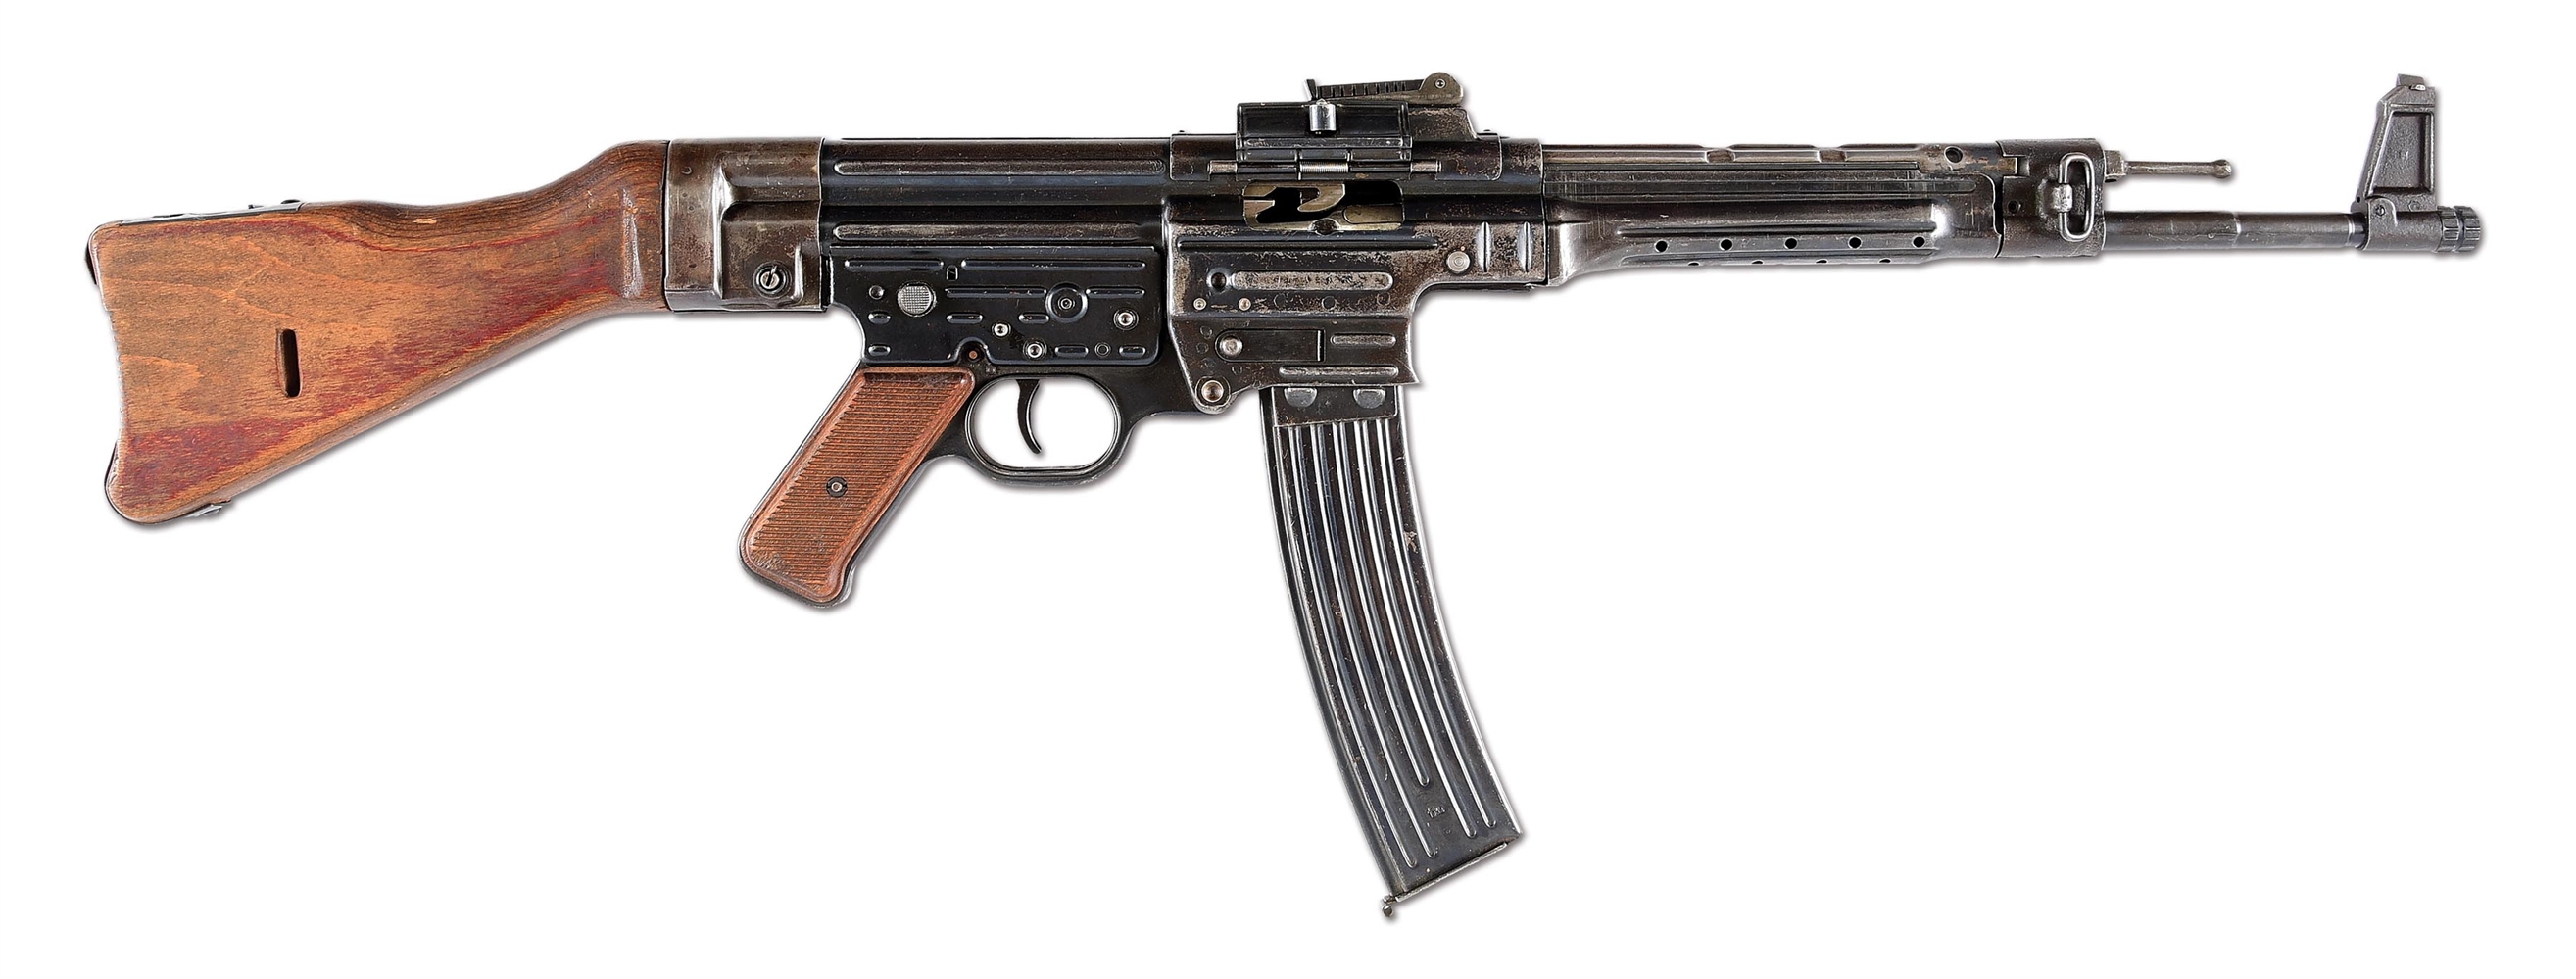 (N) GERMAN WORLD WAR II STEYR MP44 MACHINE GUN WITH ORIGINAL AMNESTY & STATE REGISTRATION PAPERWORK (CURIO & RELIC).